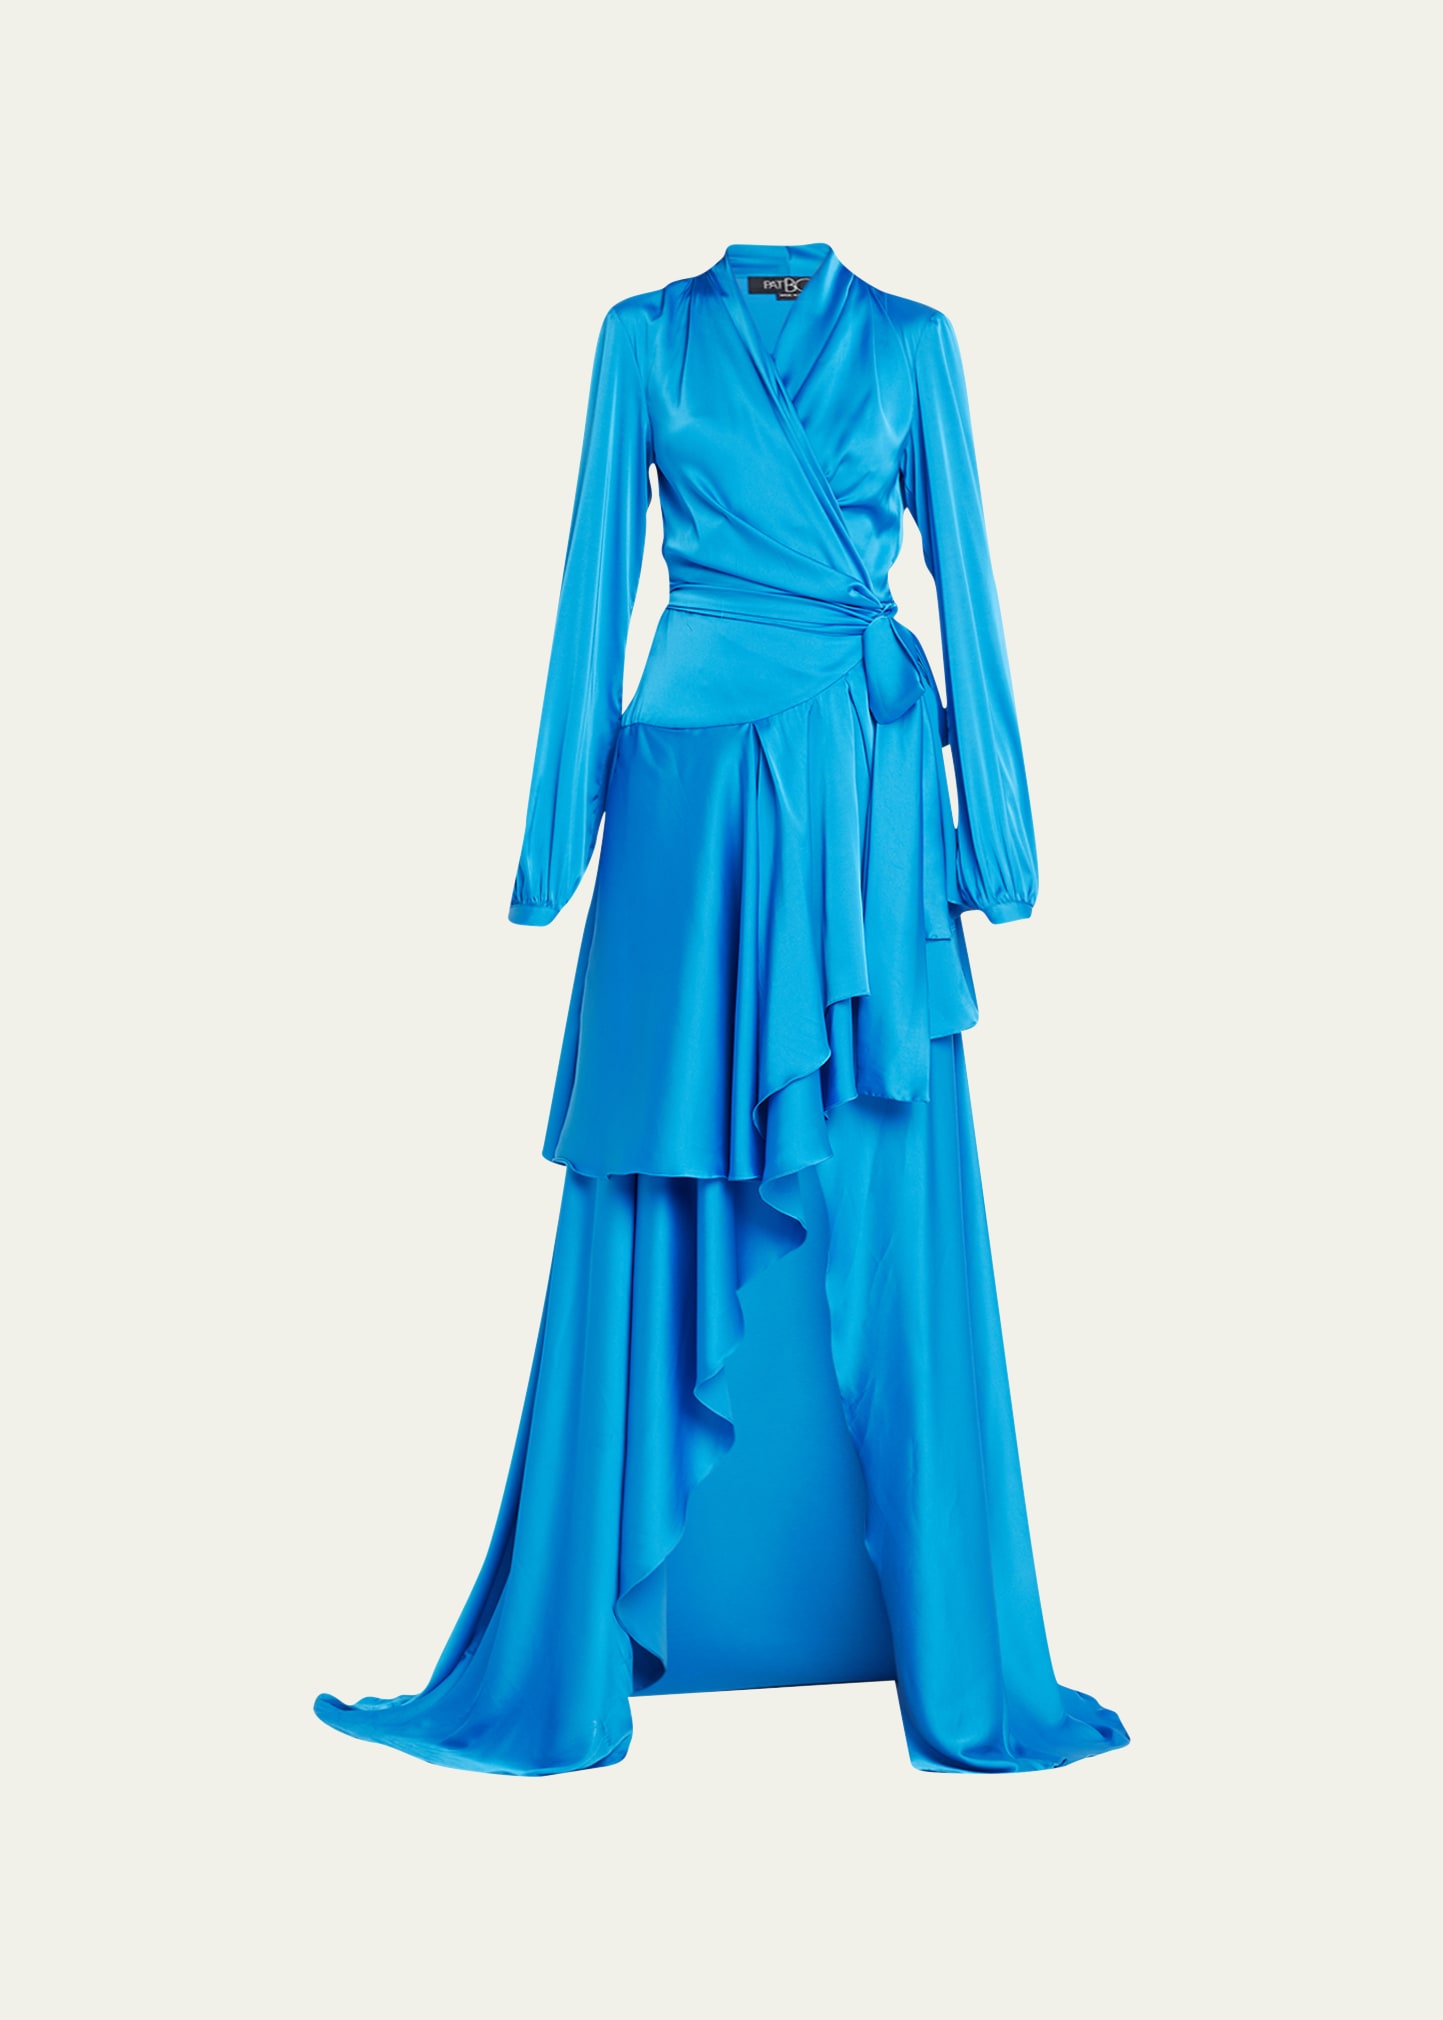 PatBO Stretch Lace Maxi Dress in Cobalt